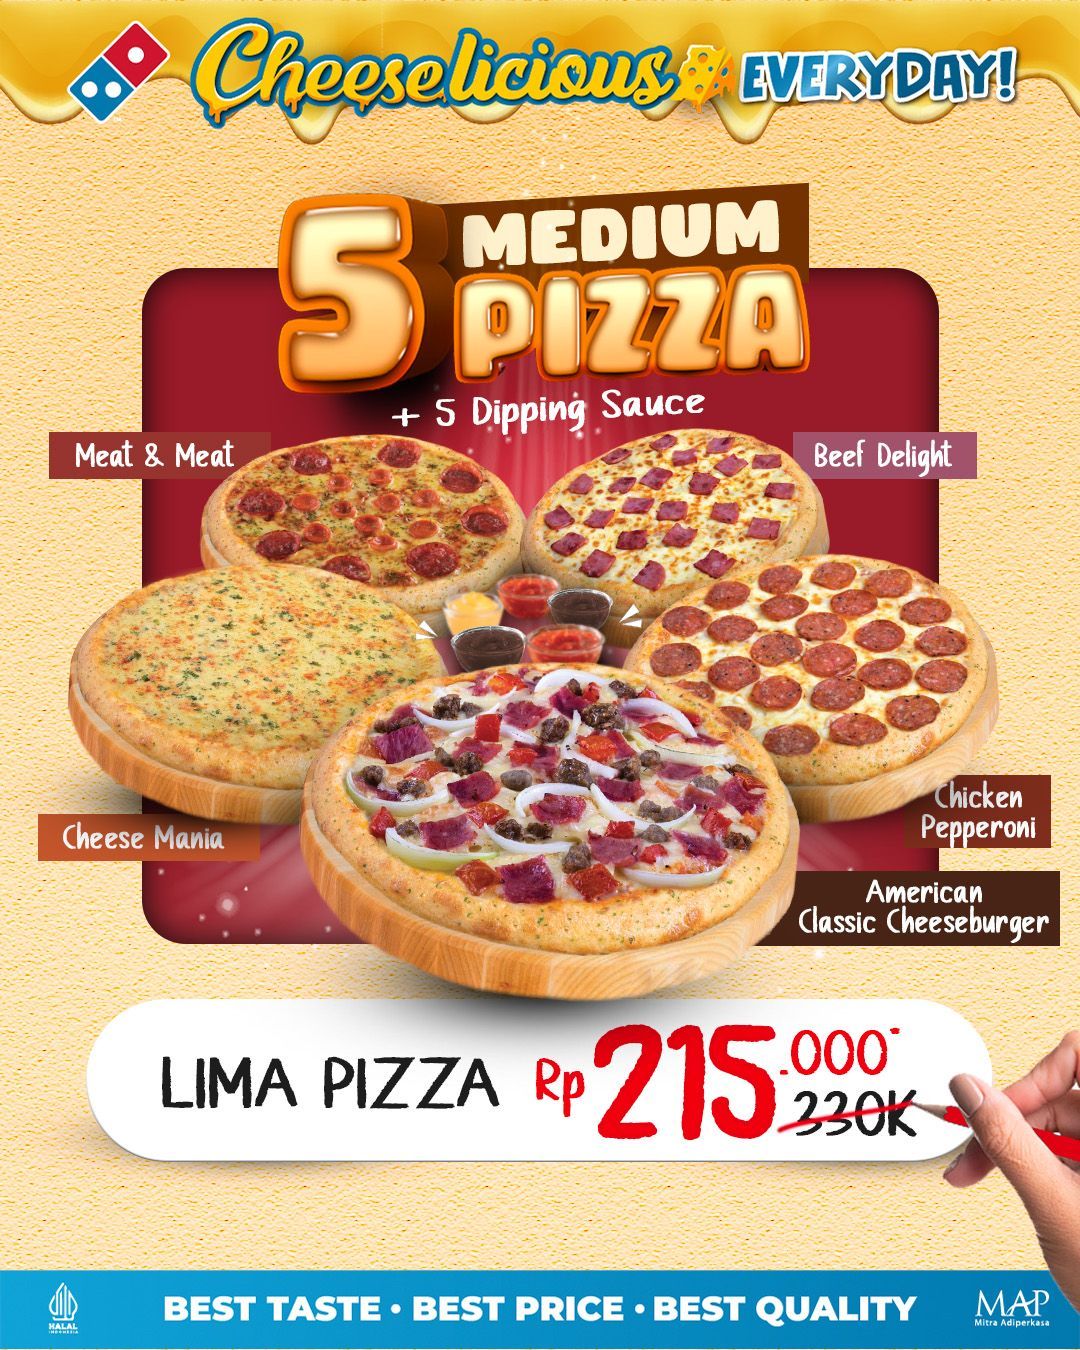 Promo Domino's Pizza – Harga Spesial 5 Medium Pizza Hanya Rp. 215.000